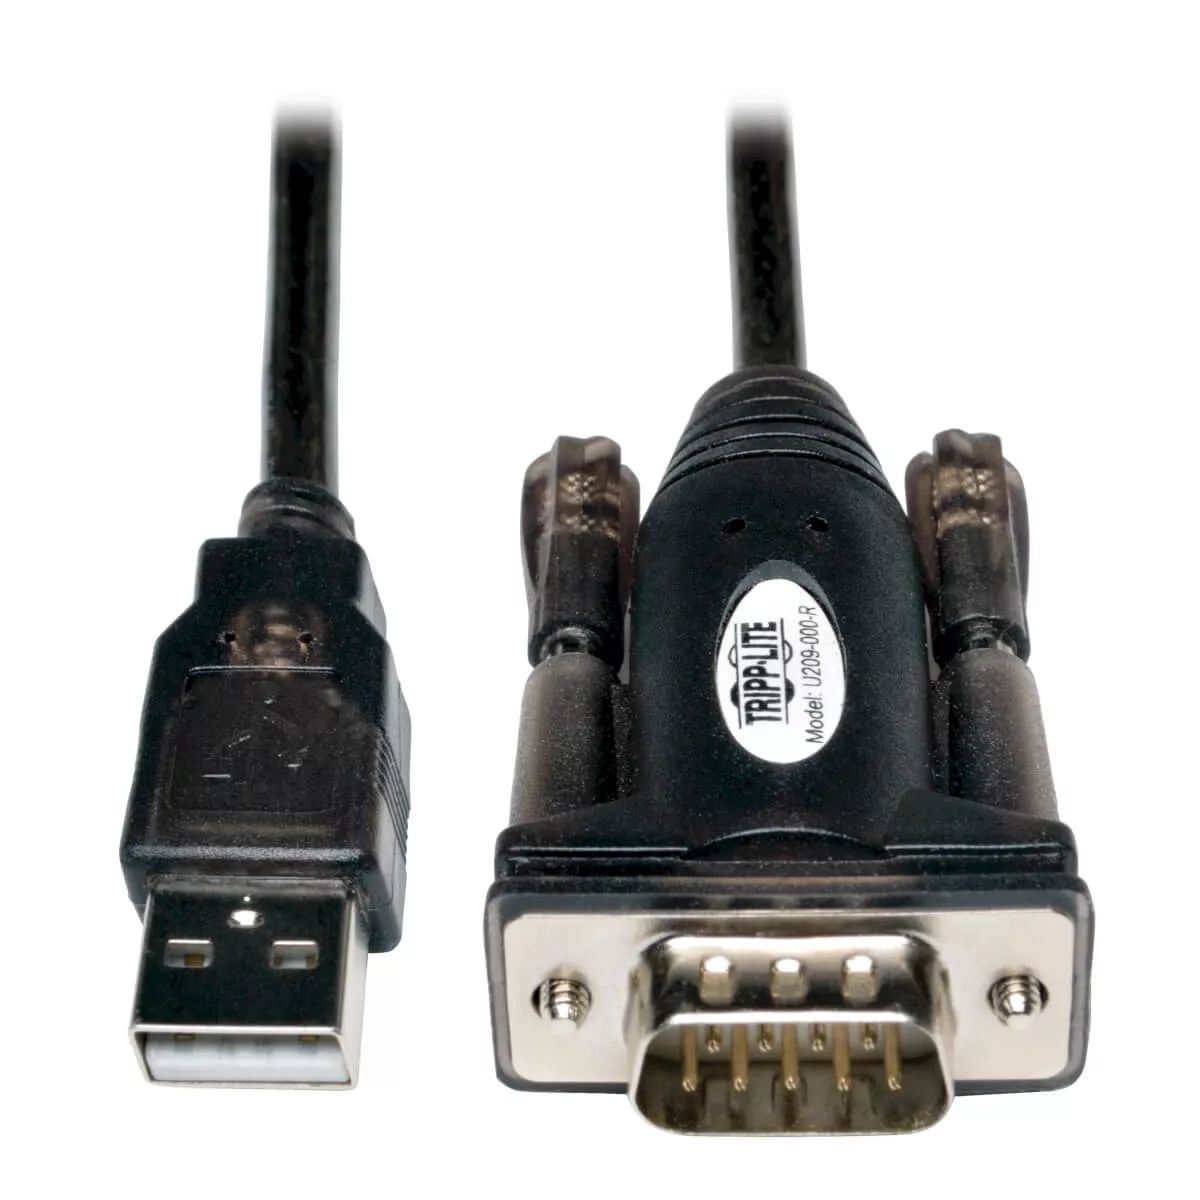 Achat EATON TRIPPLITE USB-A to RS232 DB9 Serial Adapter et autres produits de la marque Tripp Lite